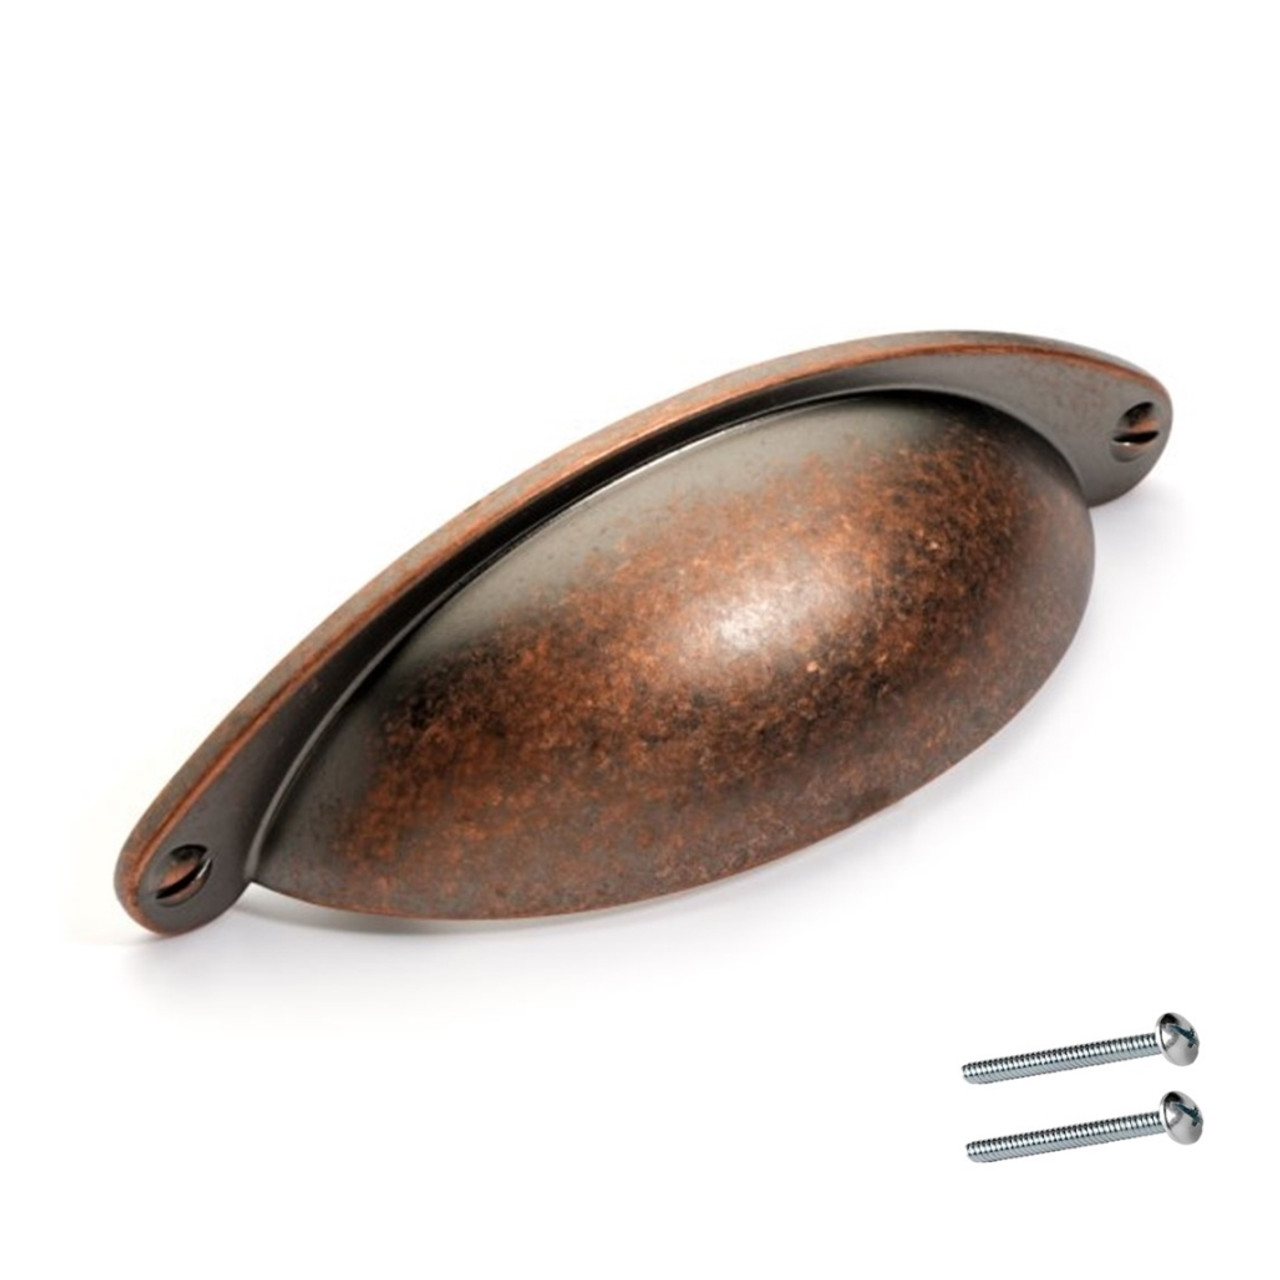 2.5 3.75 Drawer Pull Handle Antique Brass Copper Cabinet Door